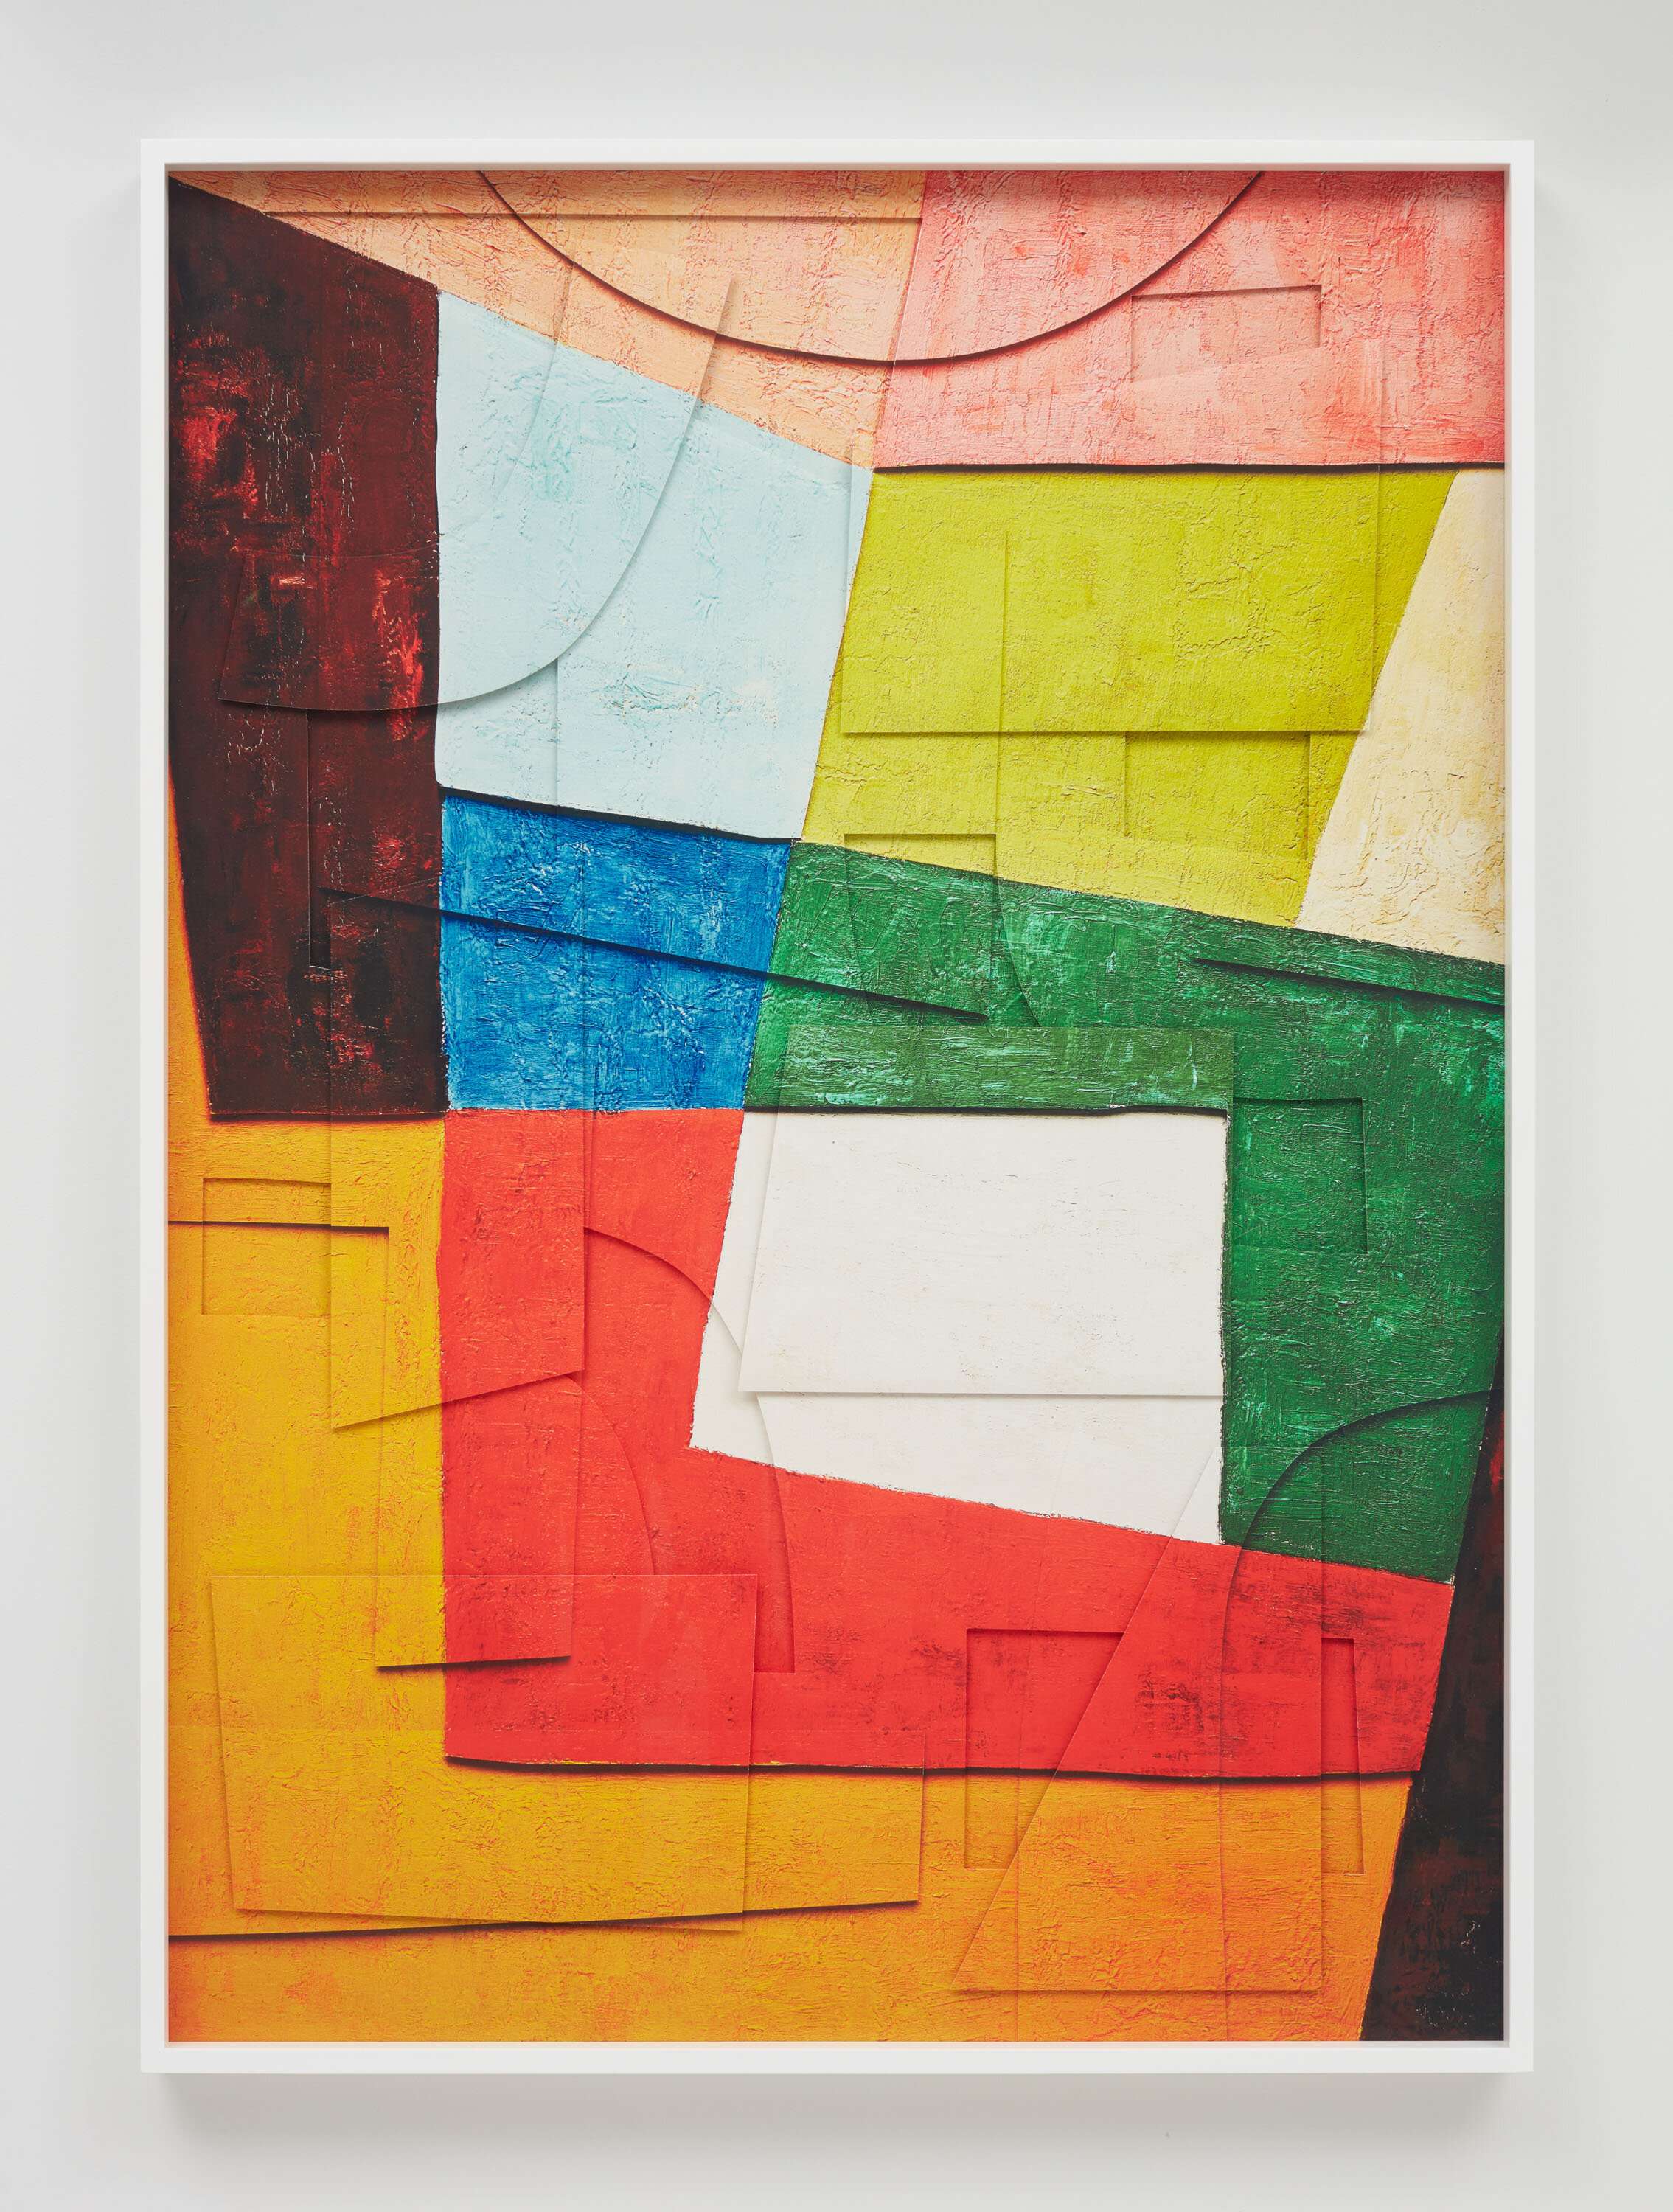 Composition/Space, after Cícero Dias, Surfaces, 2019